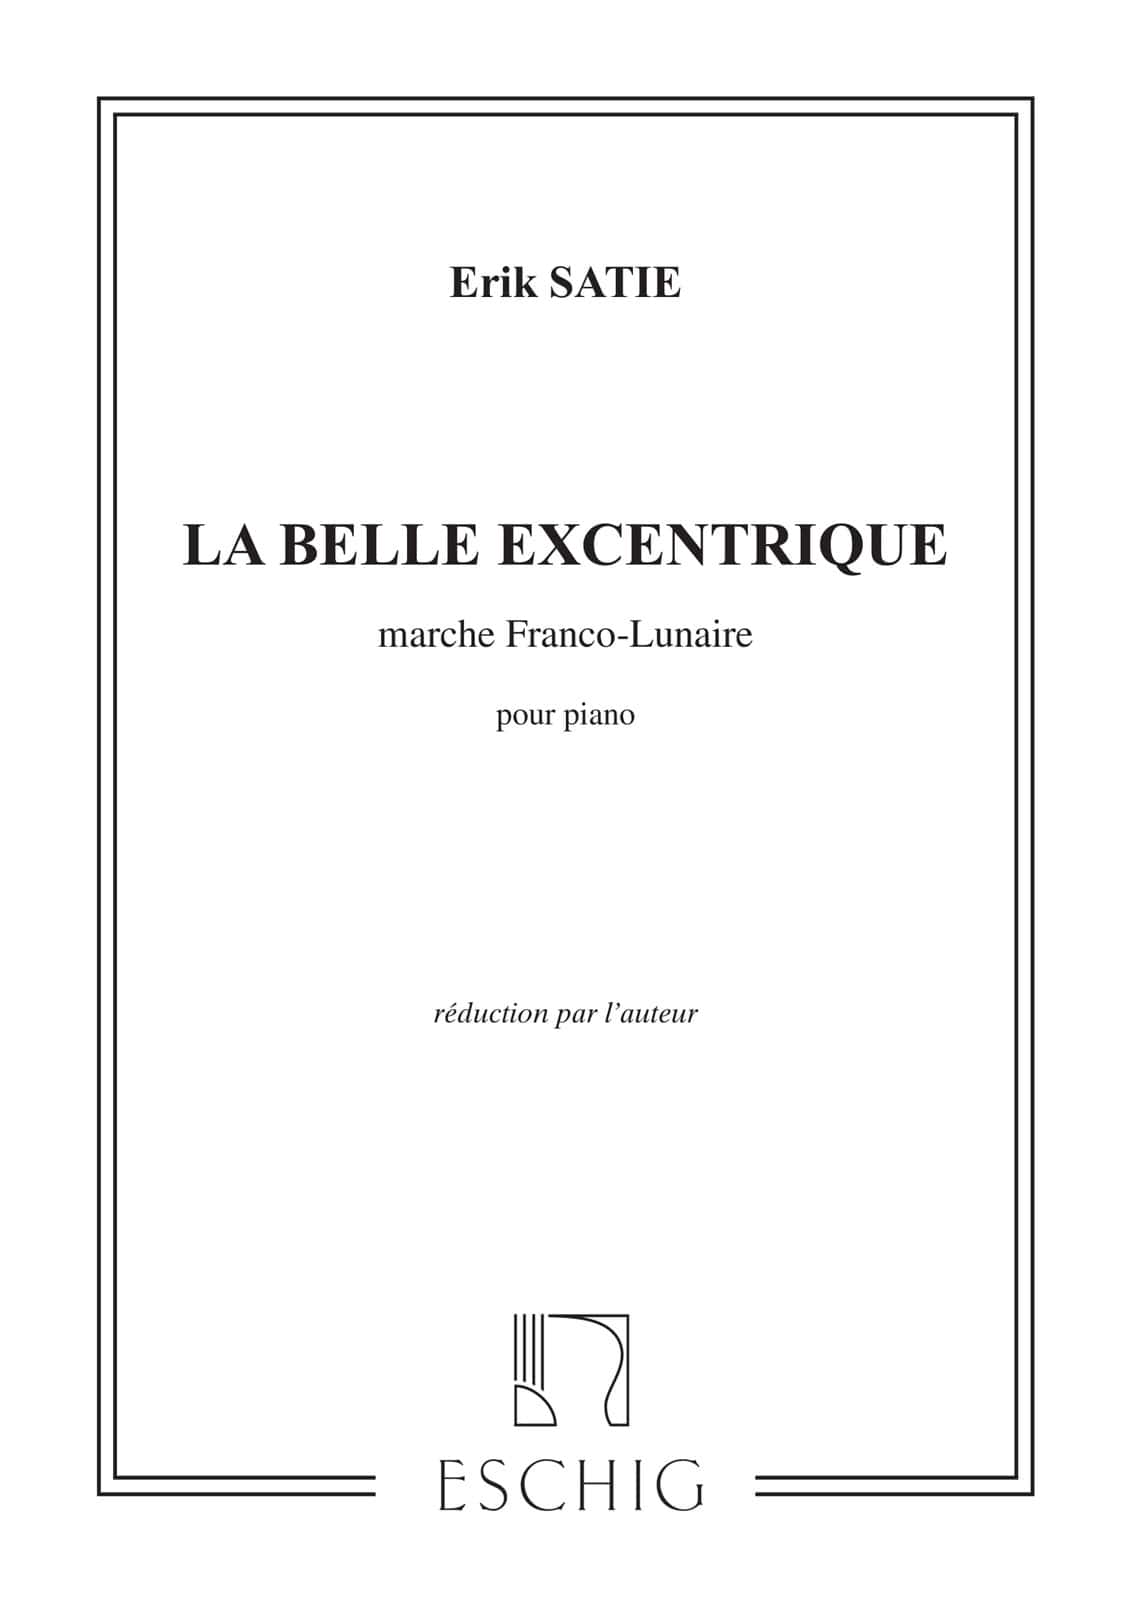 EDITION MAX ESCHIG SATIE E. - BELLE EXCENTRIQUE 2 MOUVEMENTS - PIANO